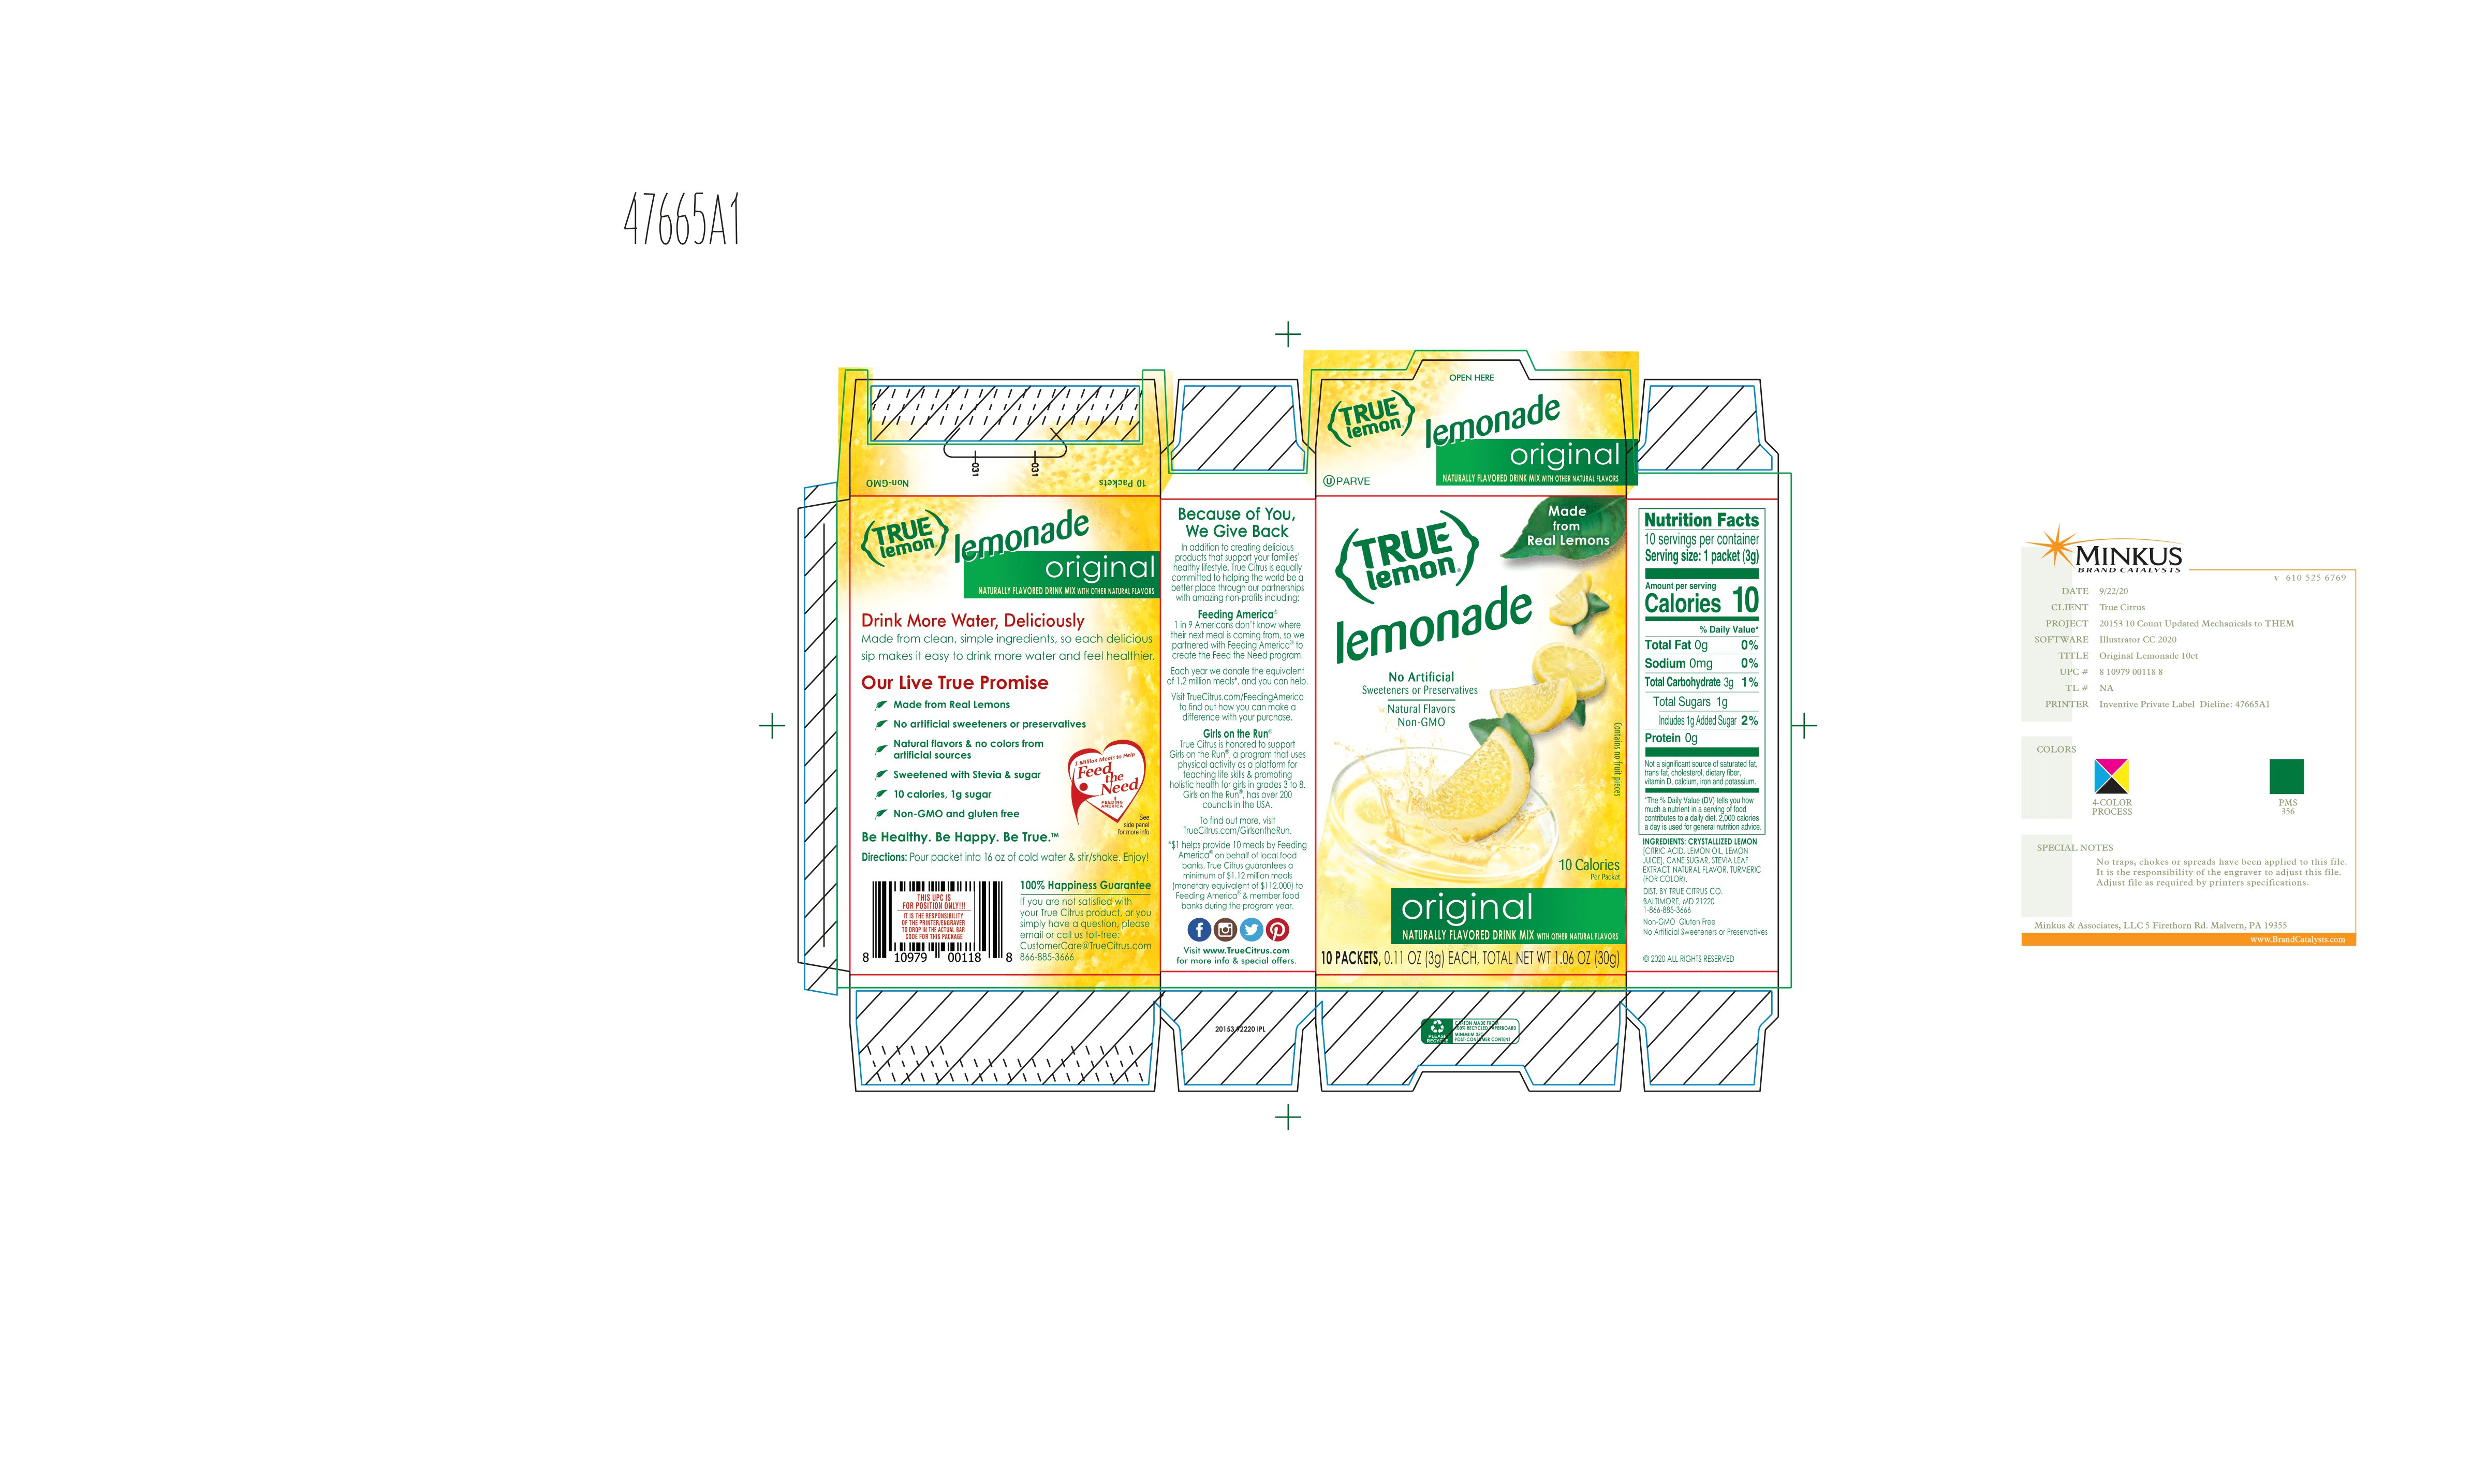 True Lemon Lemonade Original 12 units per case 1.1 oz Product Label